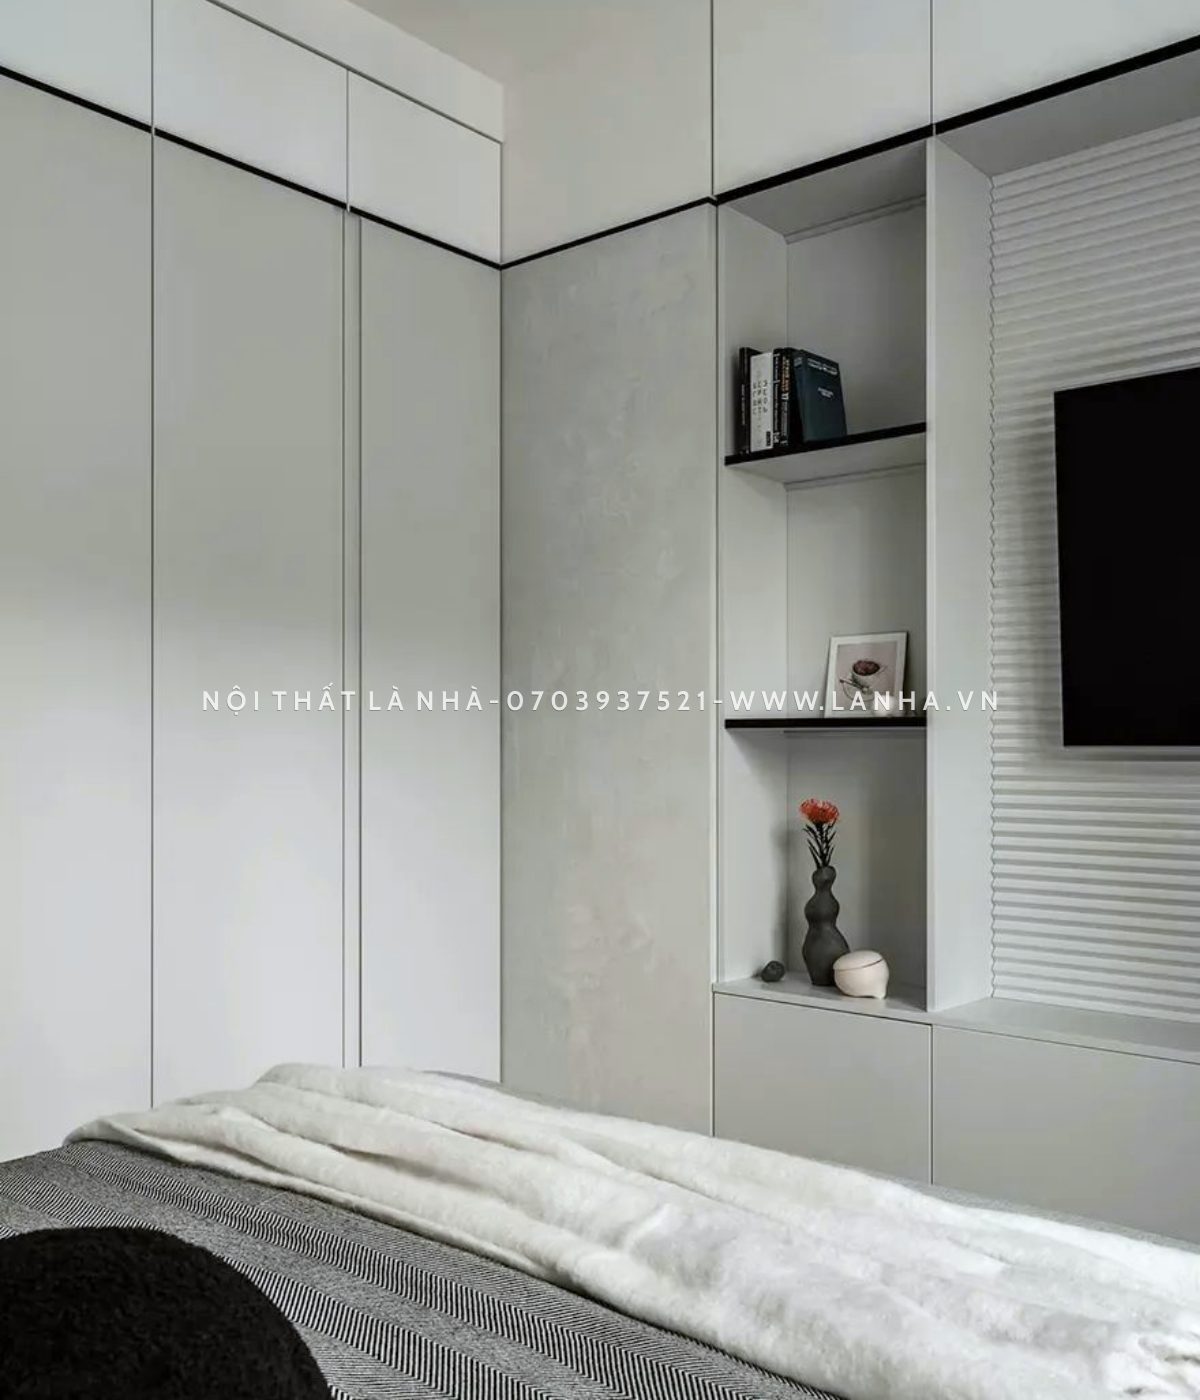 Phòng ngủ tone trắng làm chủ đạo với kệ trang trí đơn giản sang trọng, trang nhã 